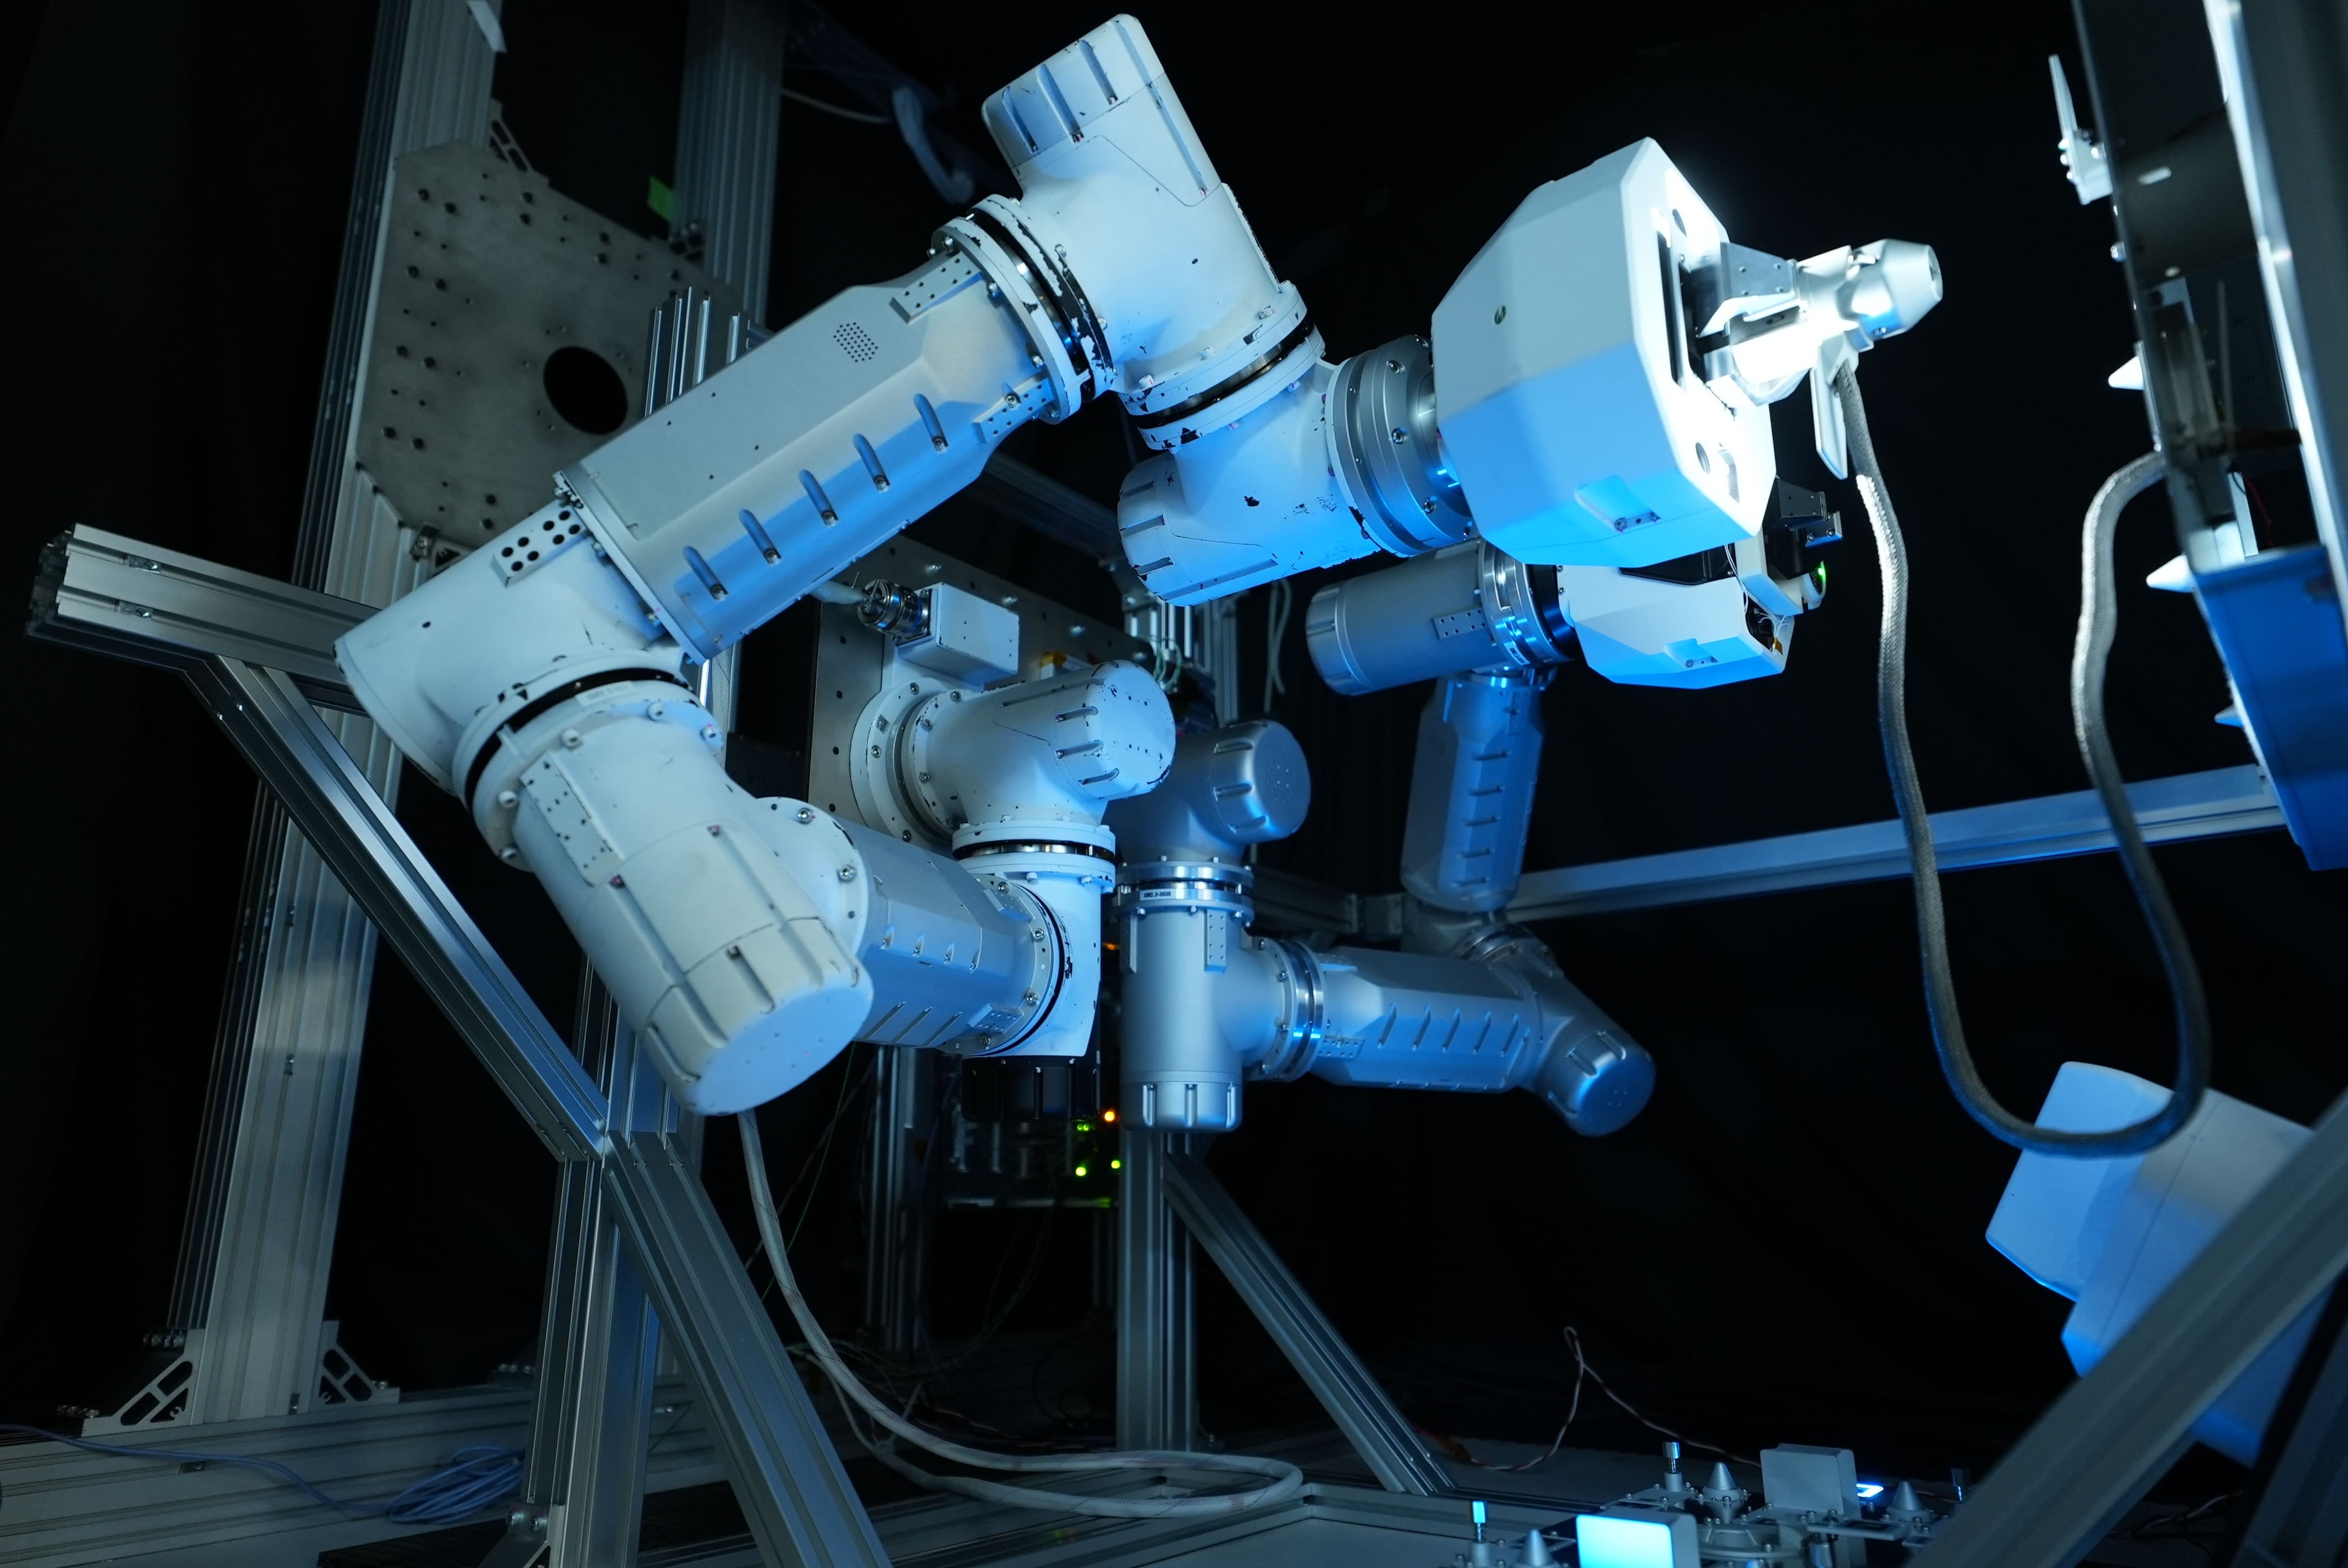 GITAIがNASA、米国民間宇宙企業Nanoracks社と共同でISS船外での宇宙ロボット技術実証を発表